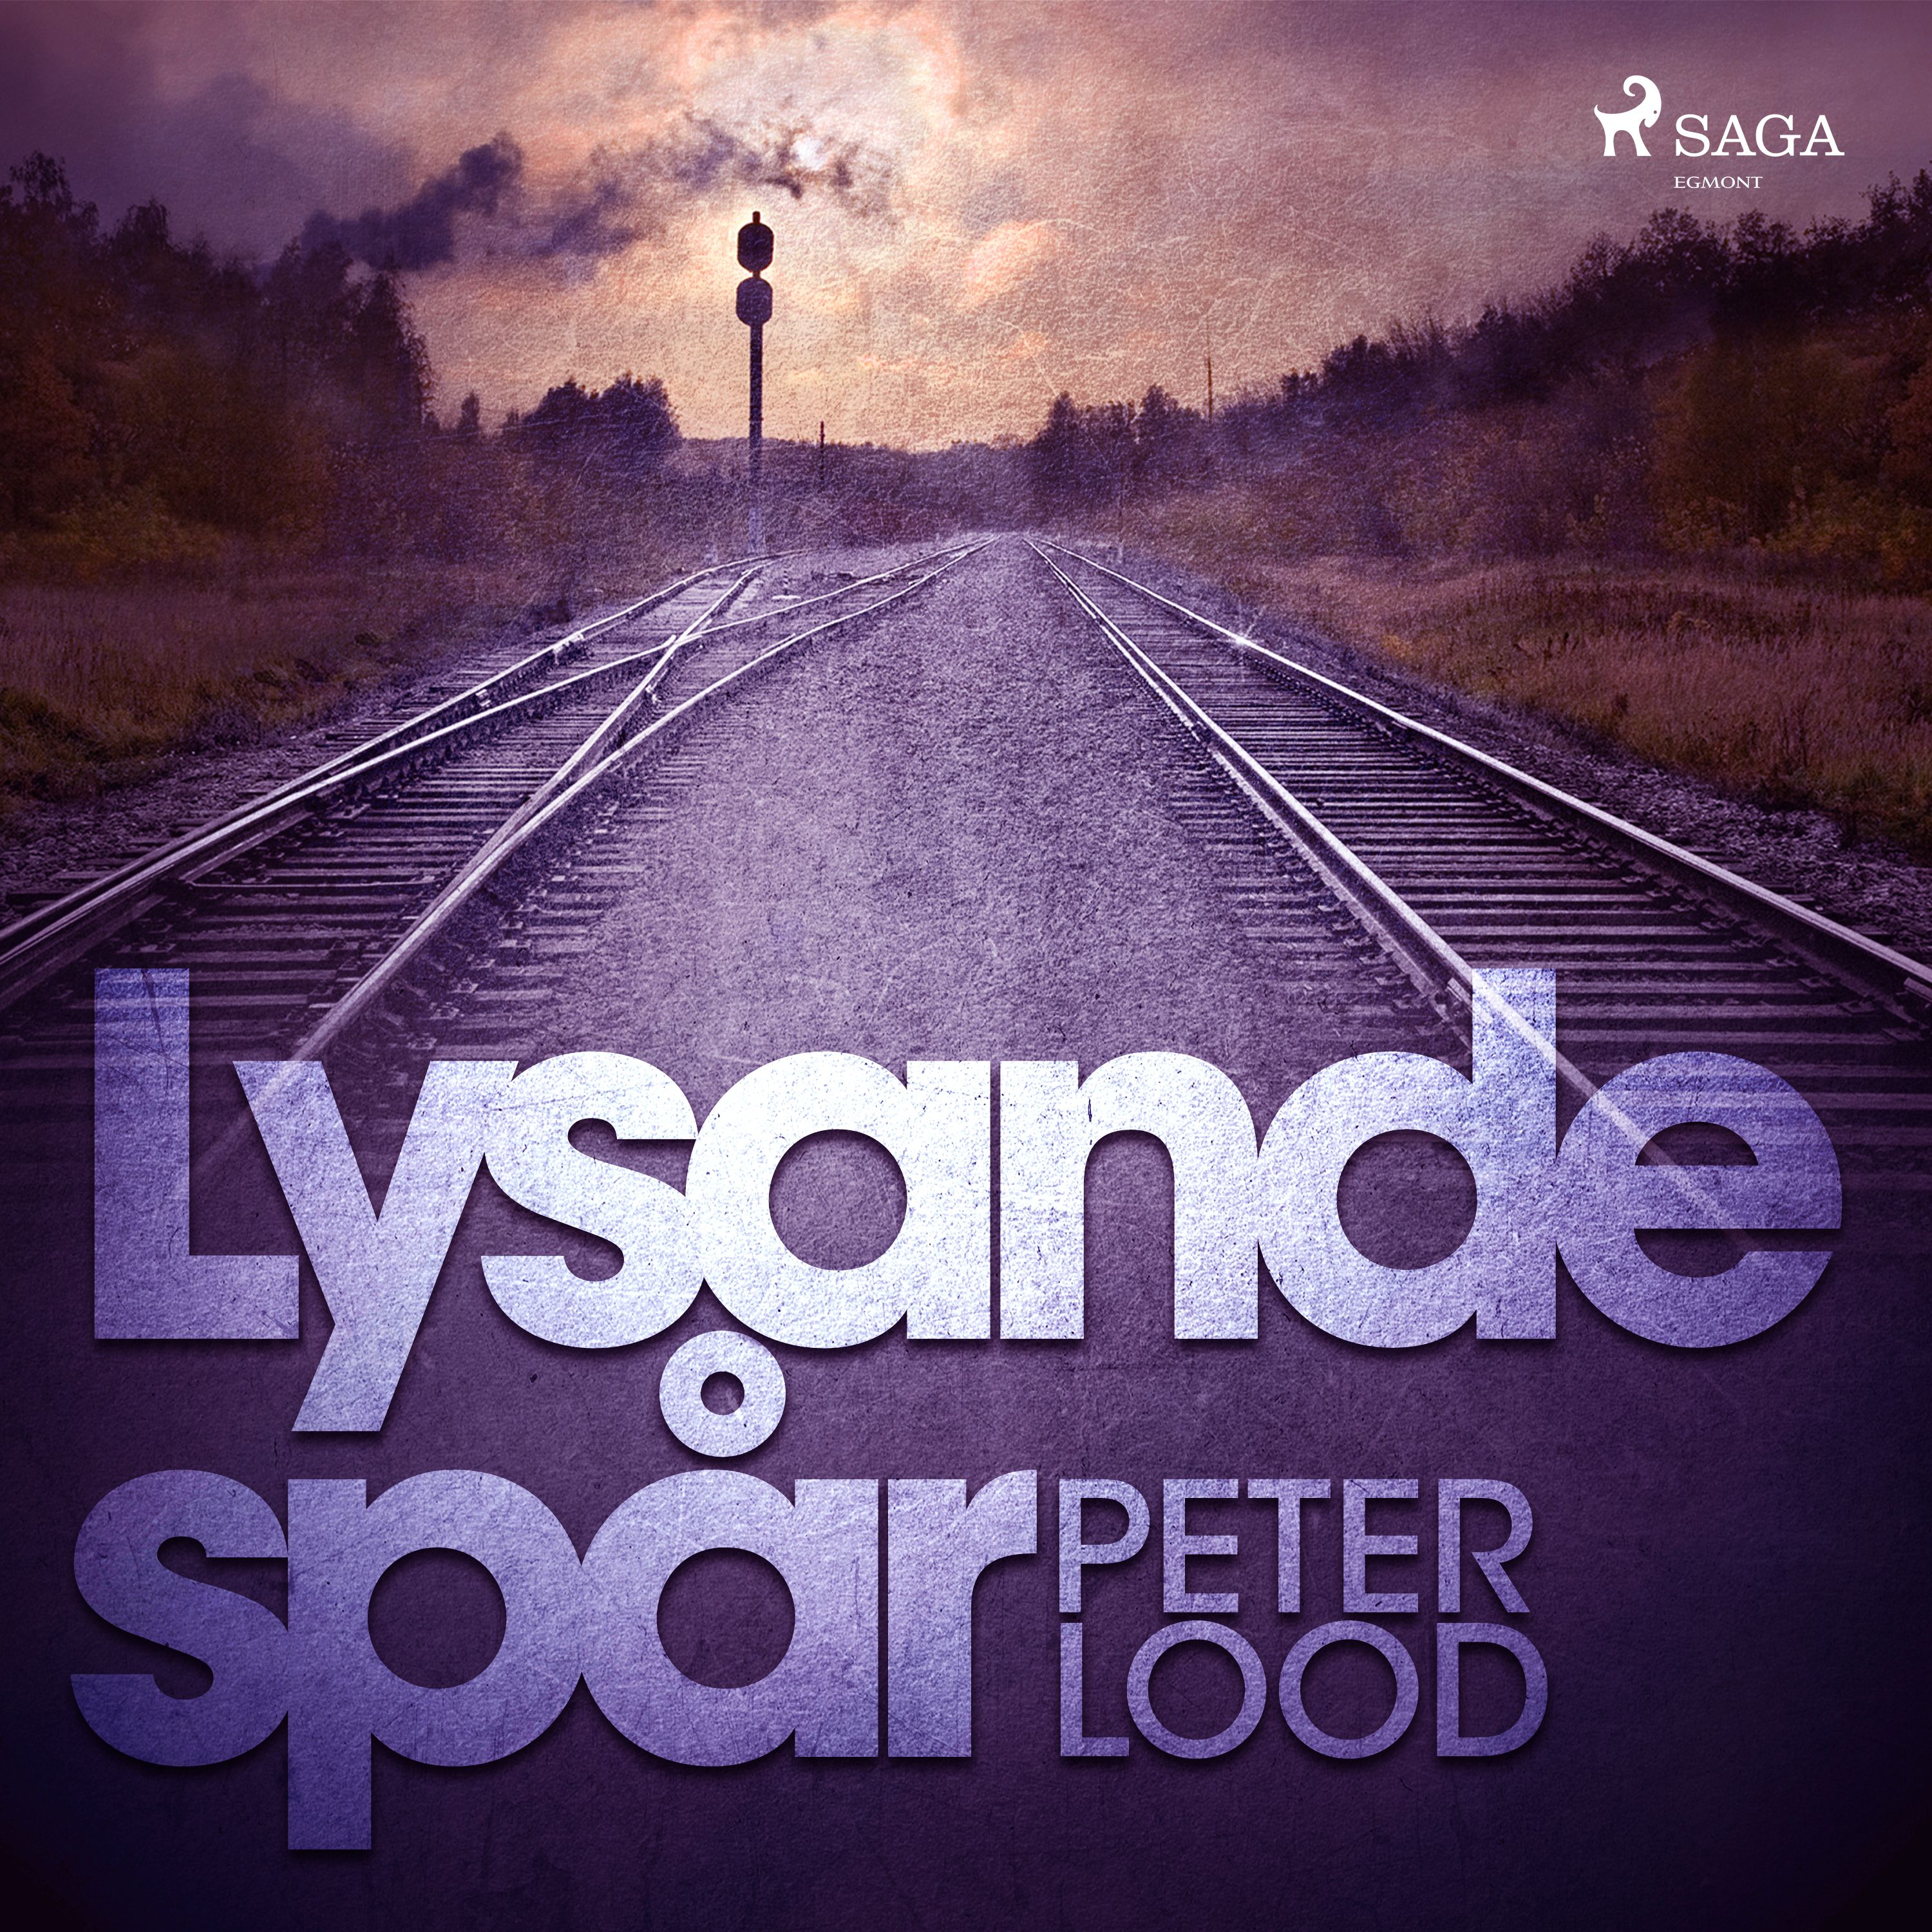 Lysande spår, audiobook by Peter Lood